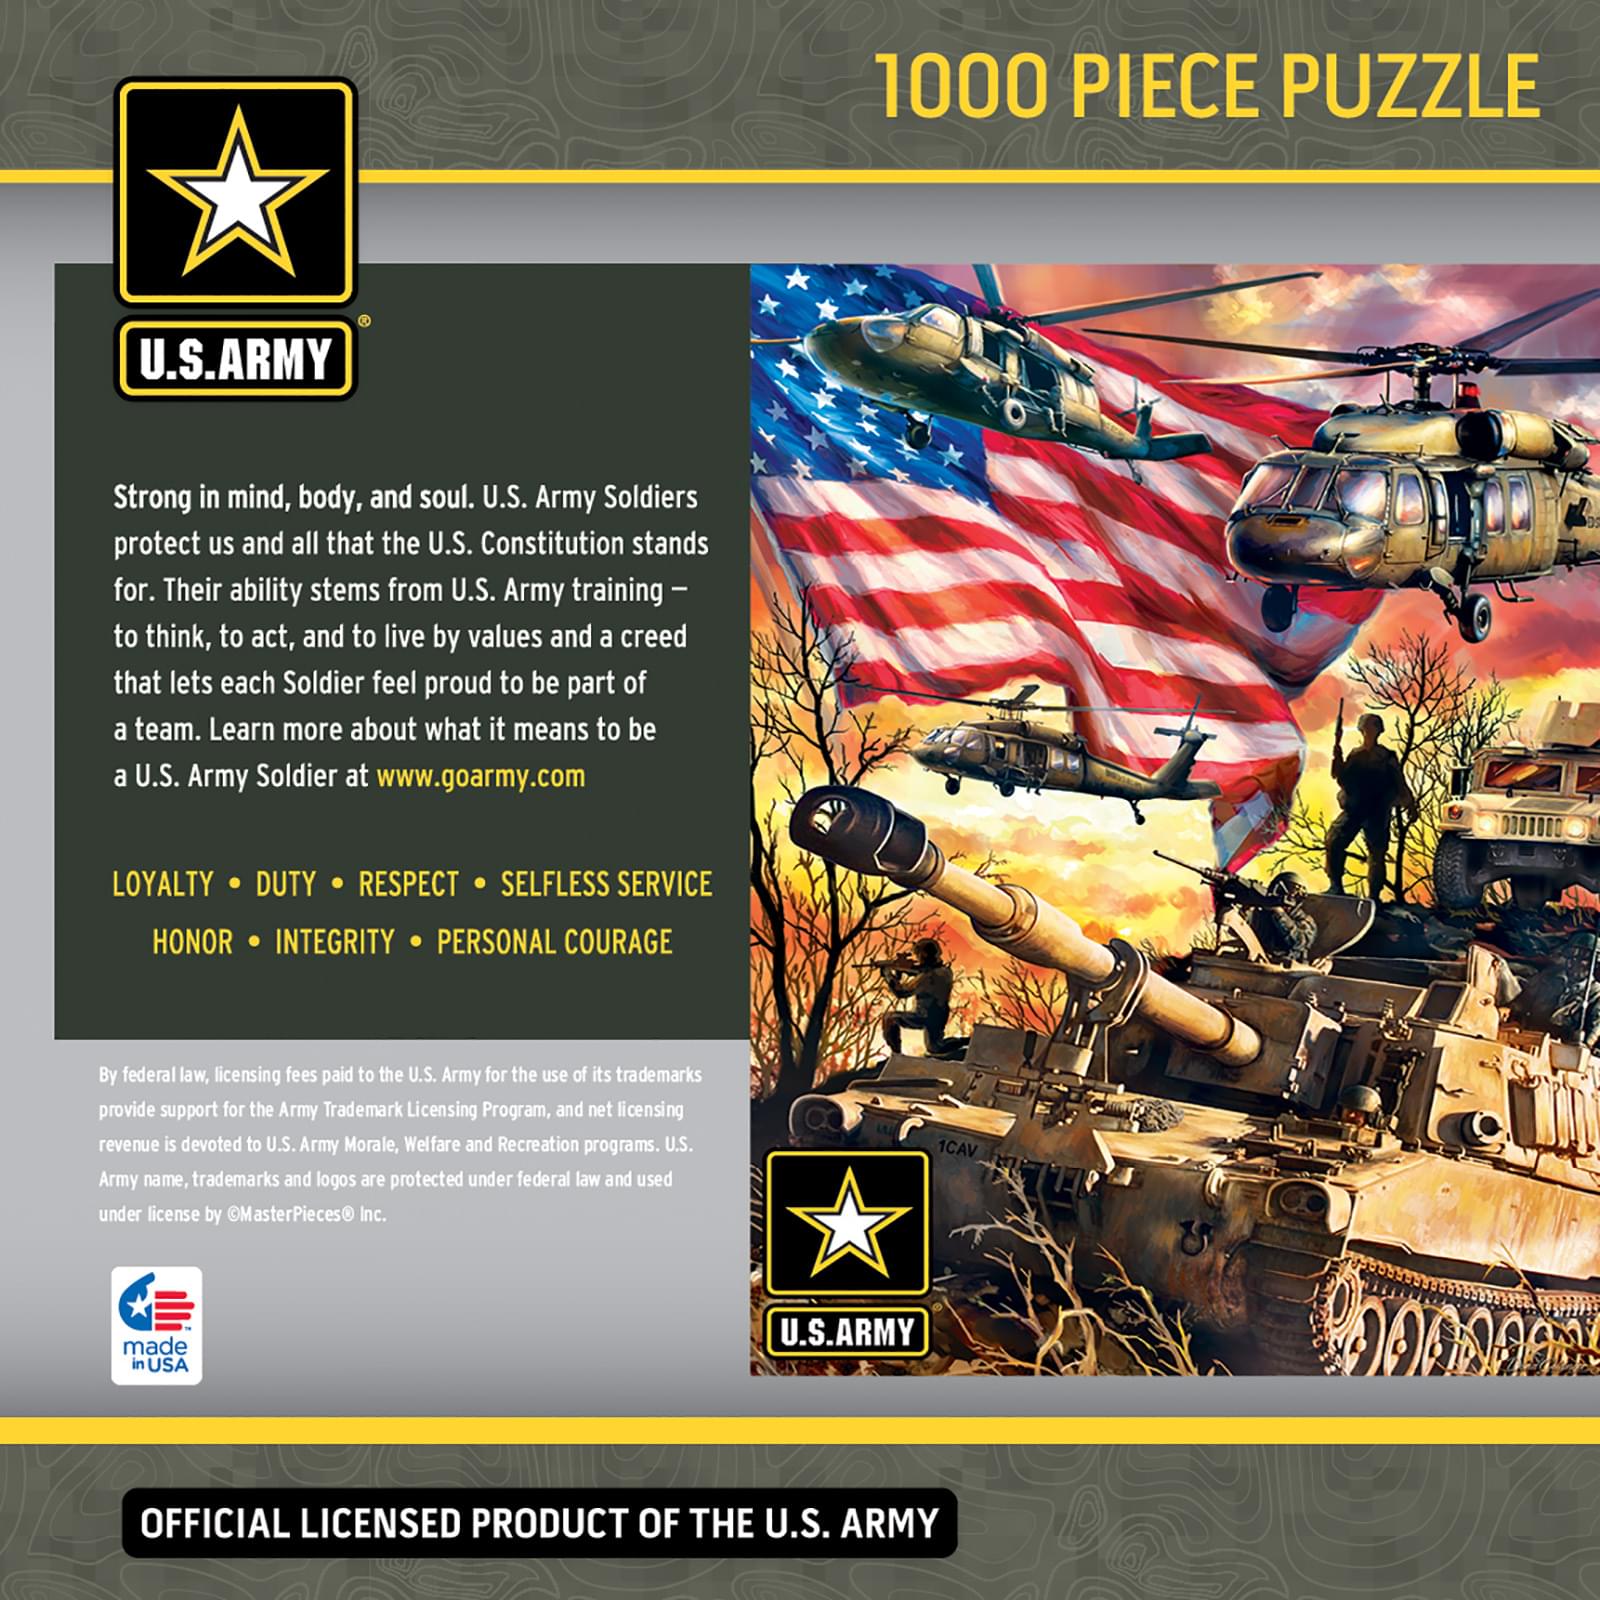 US Army Firepower 1000 Piece Jigsaw Puzzle